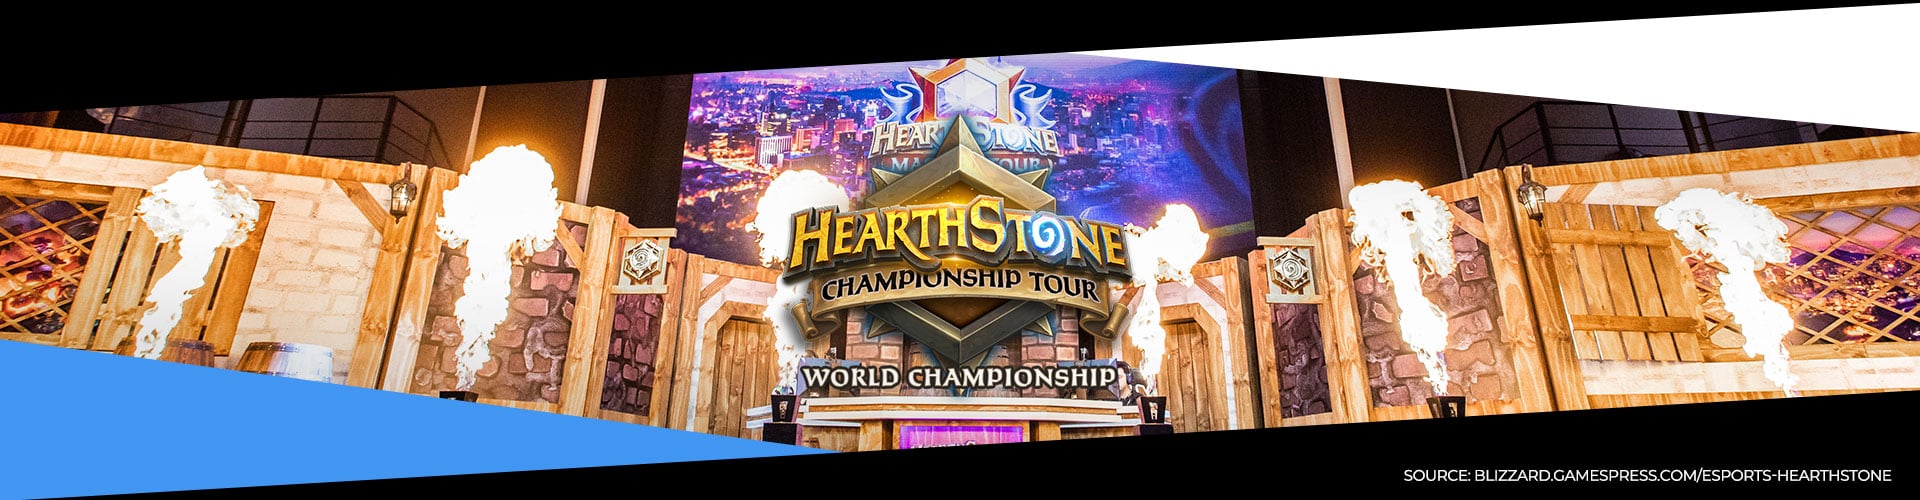 Hearthstones världsmästerskap på börjas imorgon.